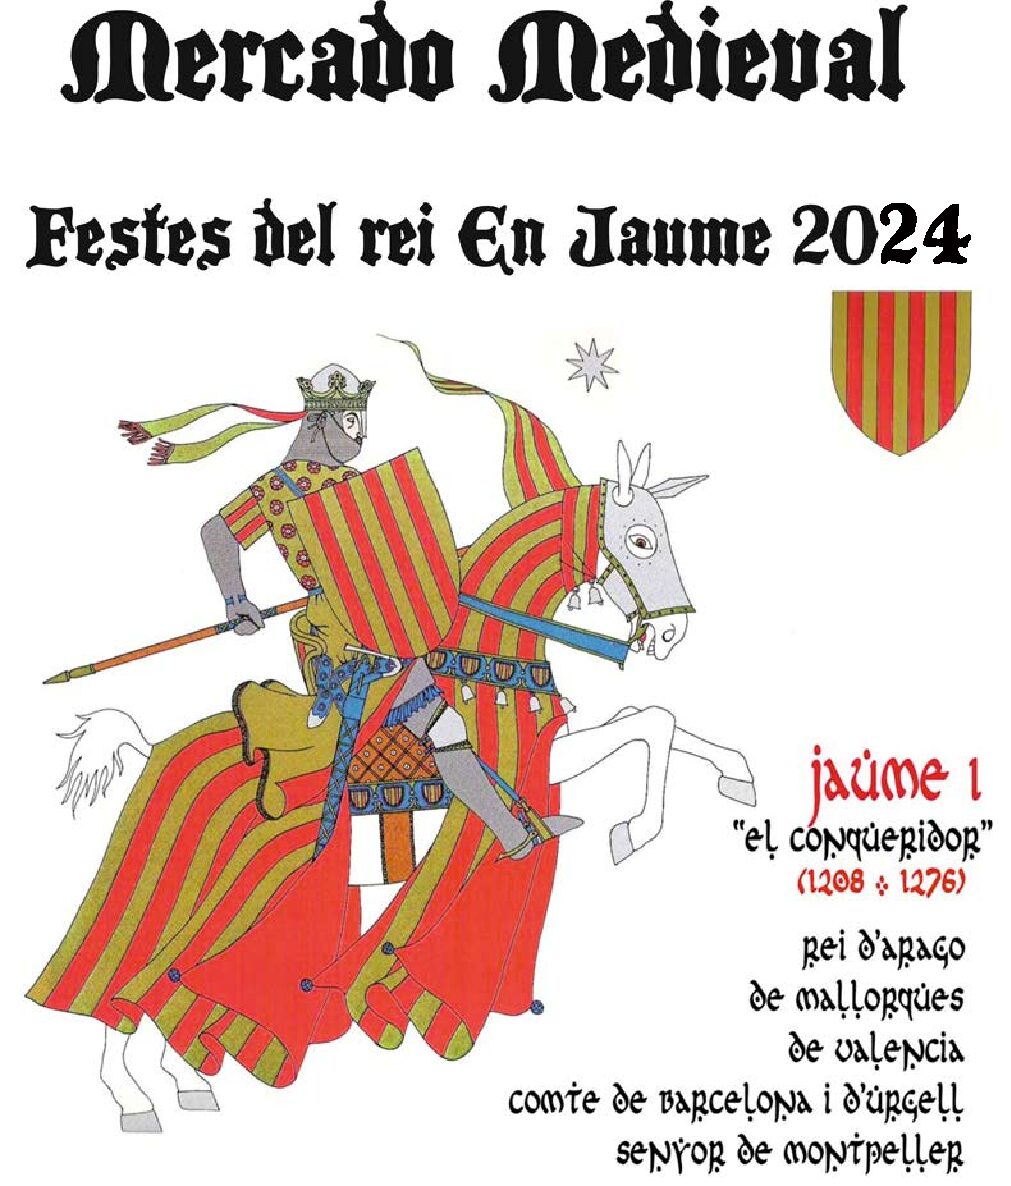 Festes del Rei en Jaume 2024